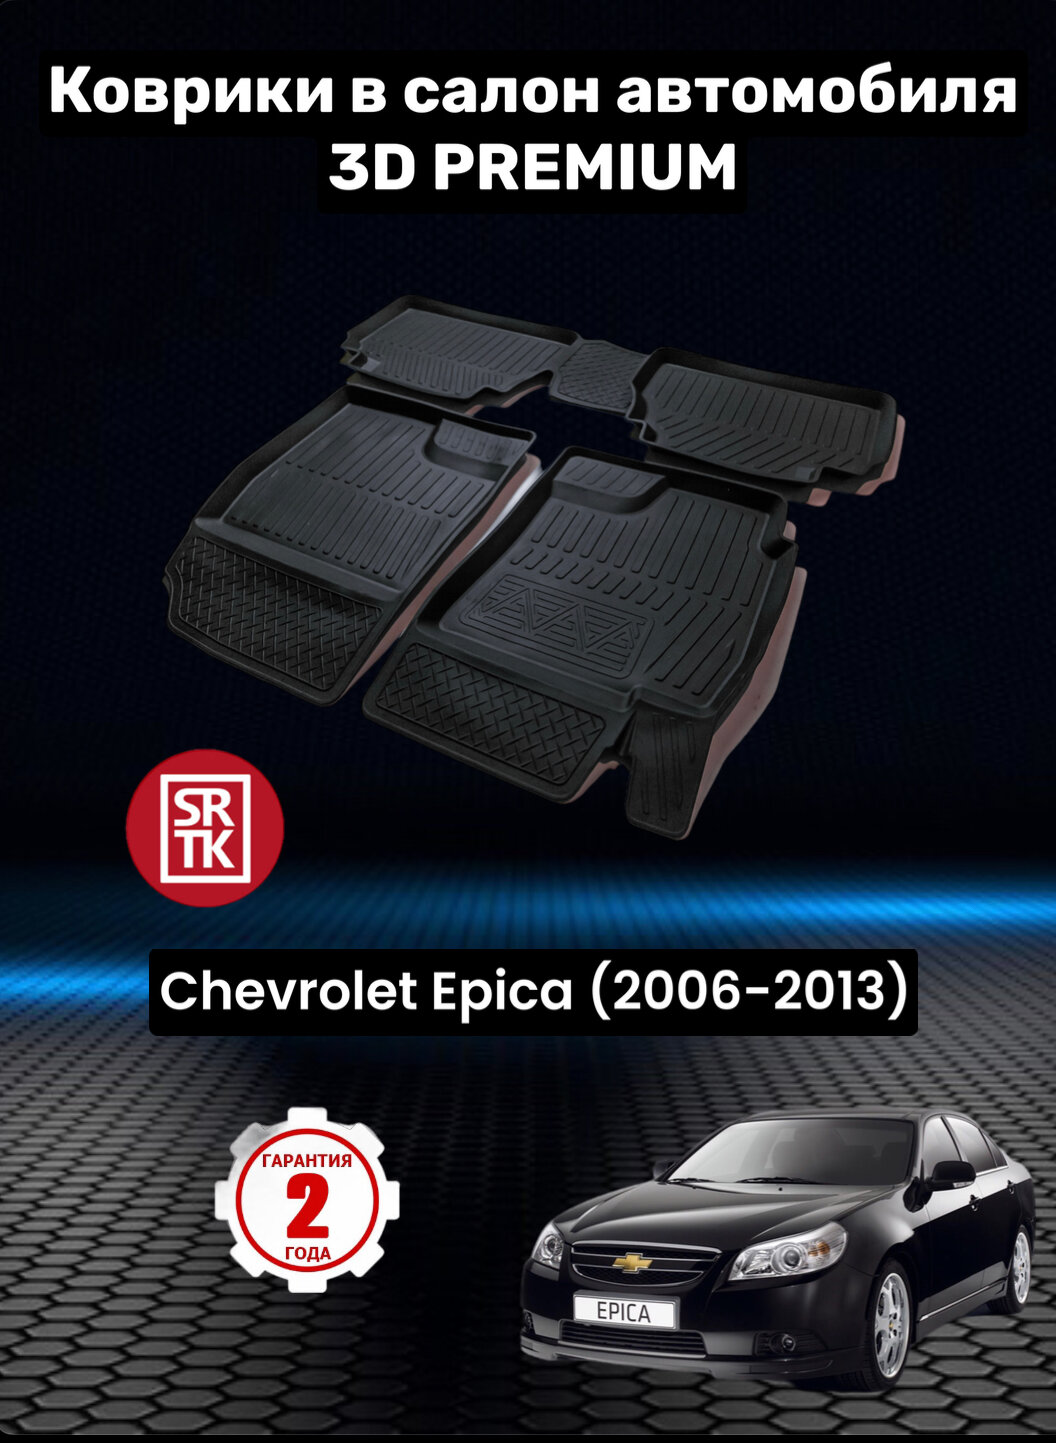 Коврики резиновые для Шевроле Эпика/Chevrolet Еpicа (2006-2013)/3D PREMIUM SRTK (Саранск) комплект в салон